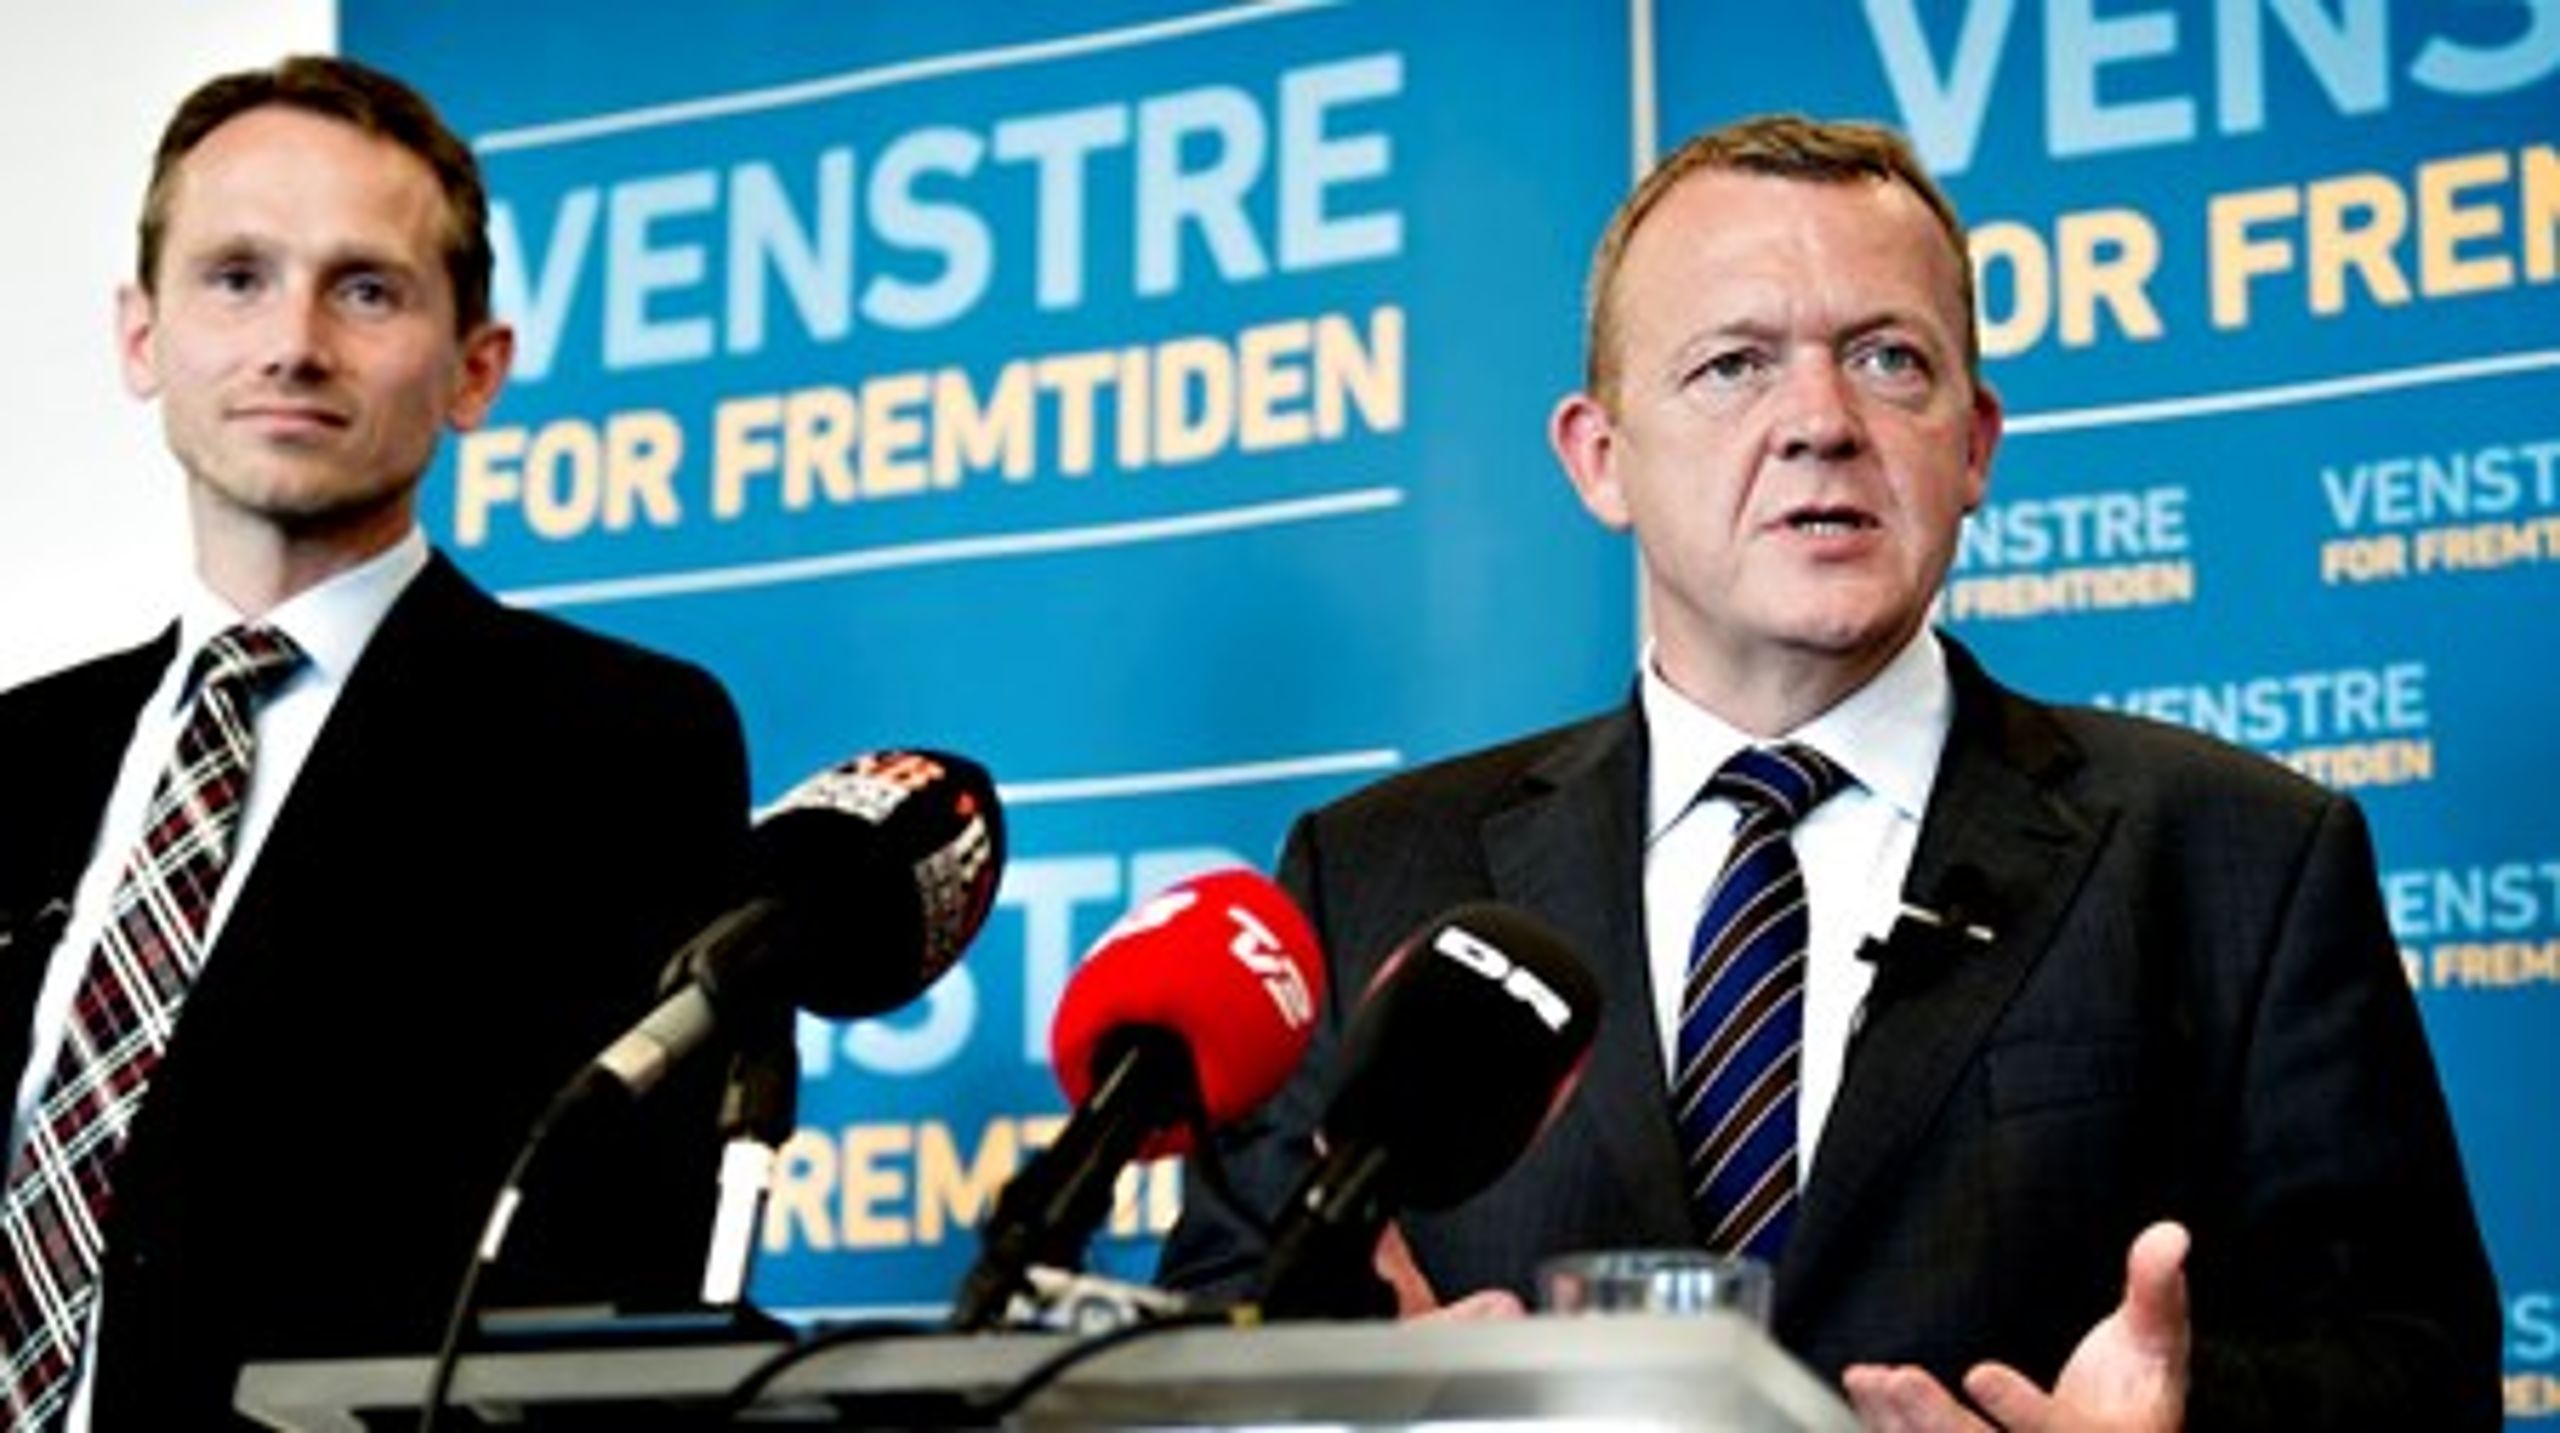 Lars Løkke Rasmussen og Venstre præsenterer tirsdag en samlet asylreform, der skal stramme reglerne.